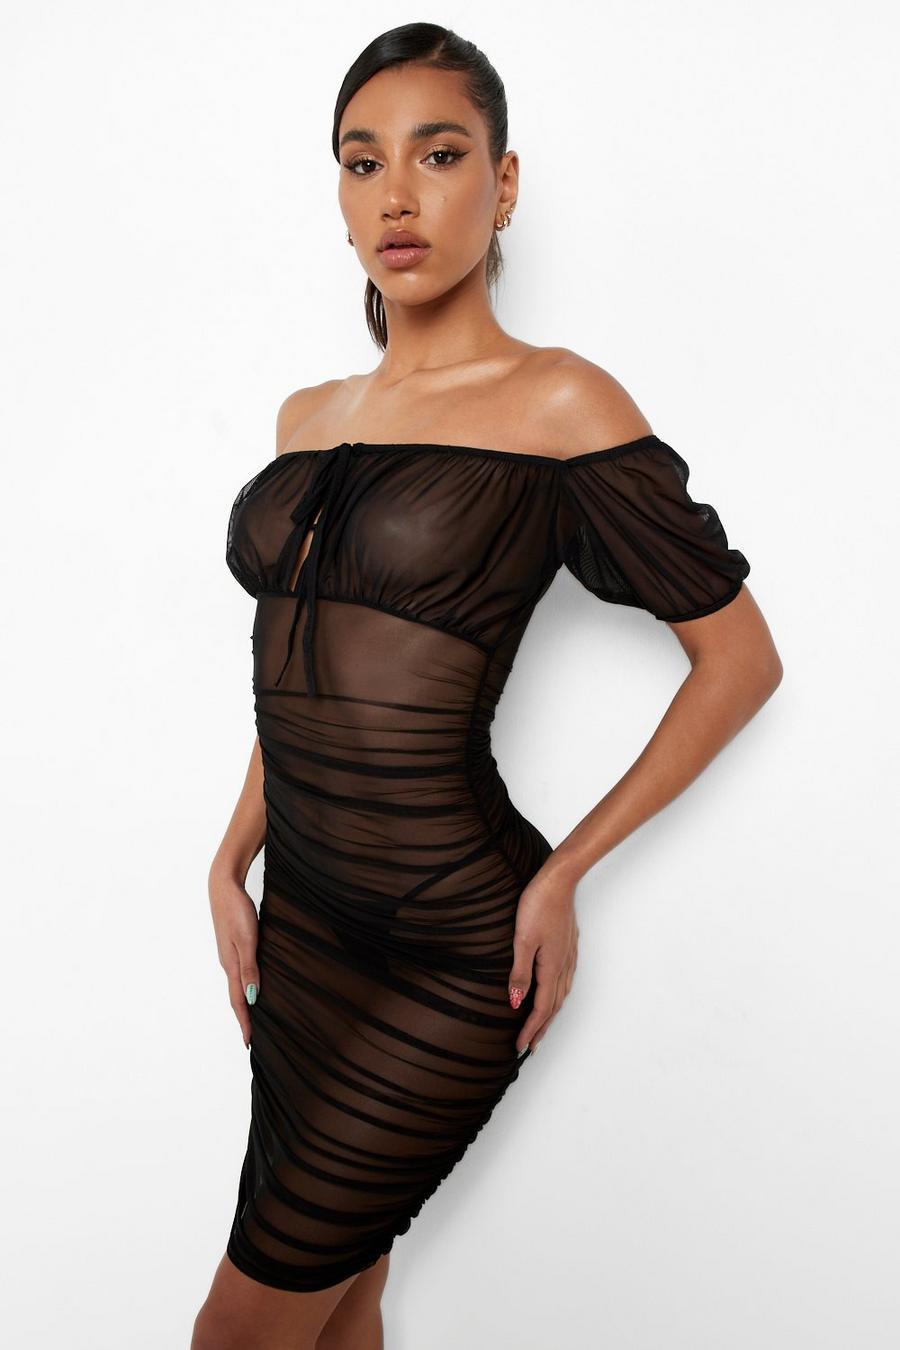 https://media.boohoo.com/i/boohoo/gzz01780_black_xl/female-black-mesh-off-the-shoulder-mini-dress/?w=900&qlt=default&fmt.jp2.qlt=70&fmt=auto&sm=fit